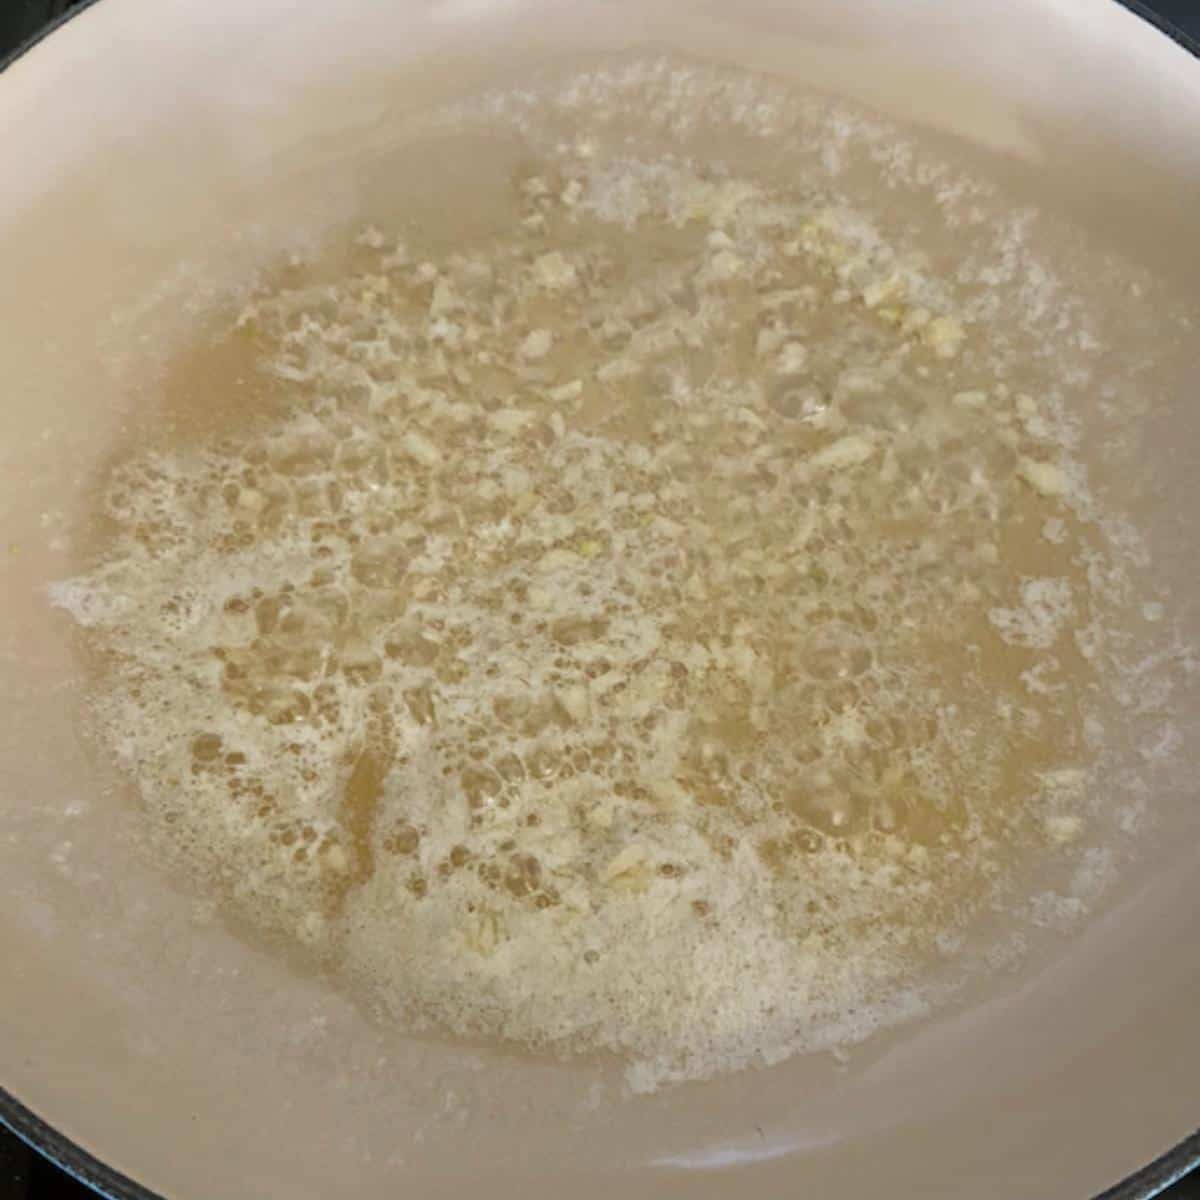 Garlic and butter sautéing in pan.